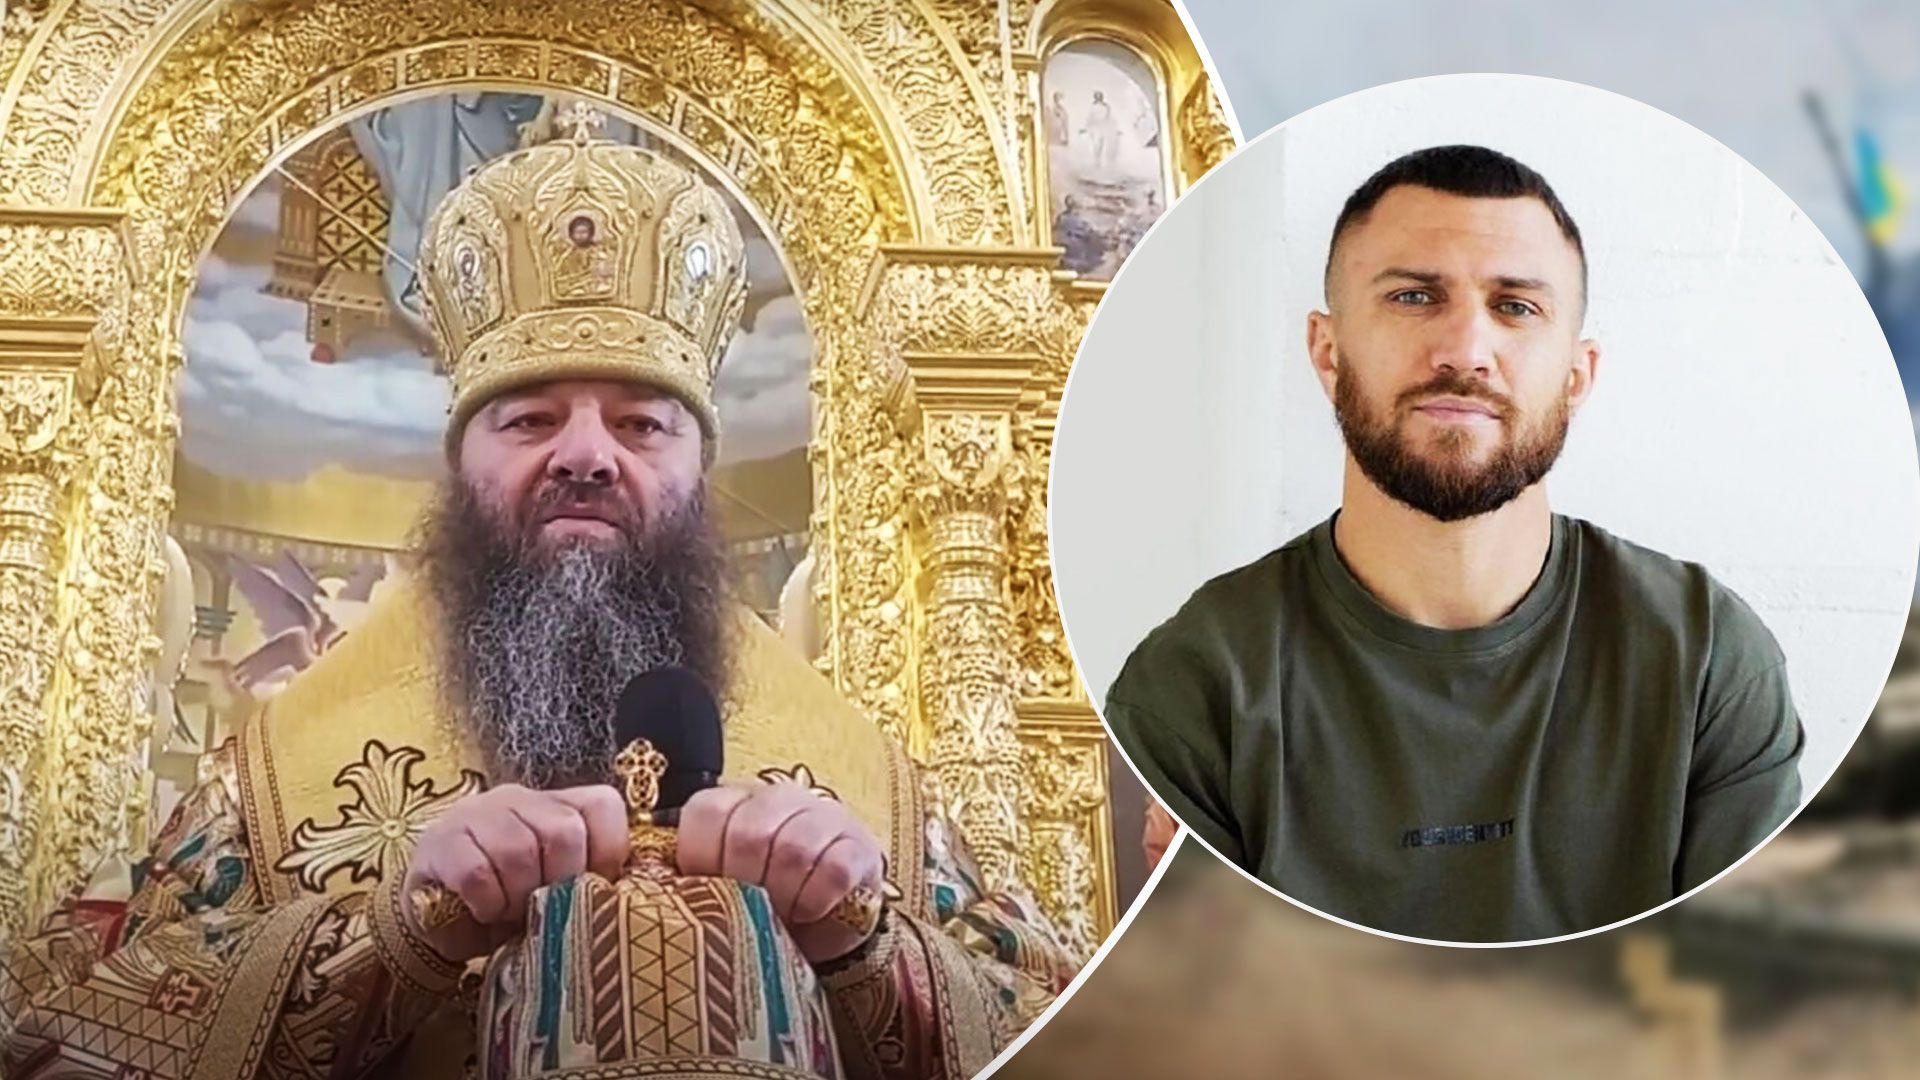 Ломаченко опубликовал видео Лонгина, что Украина воюет против церкви